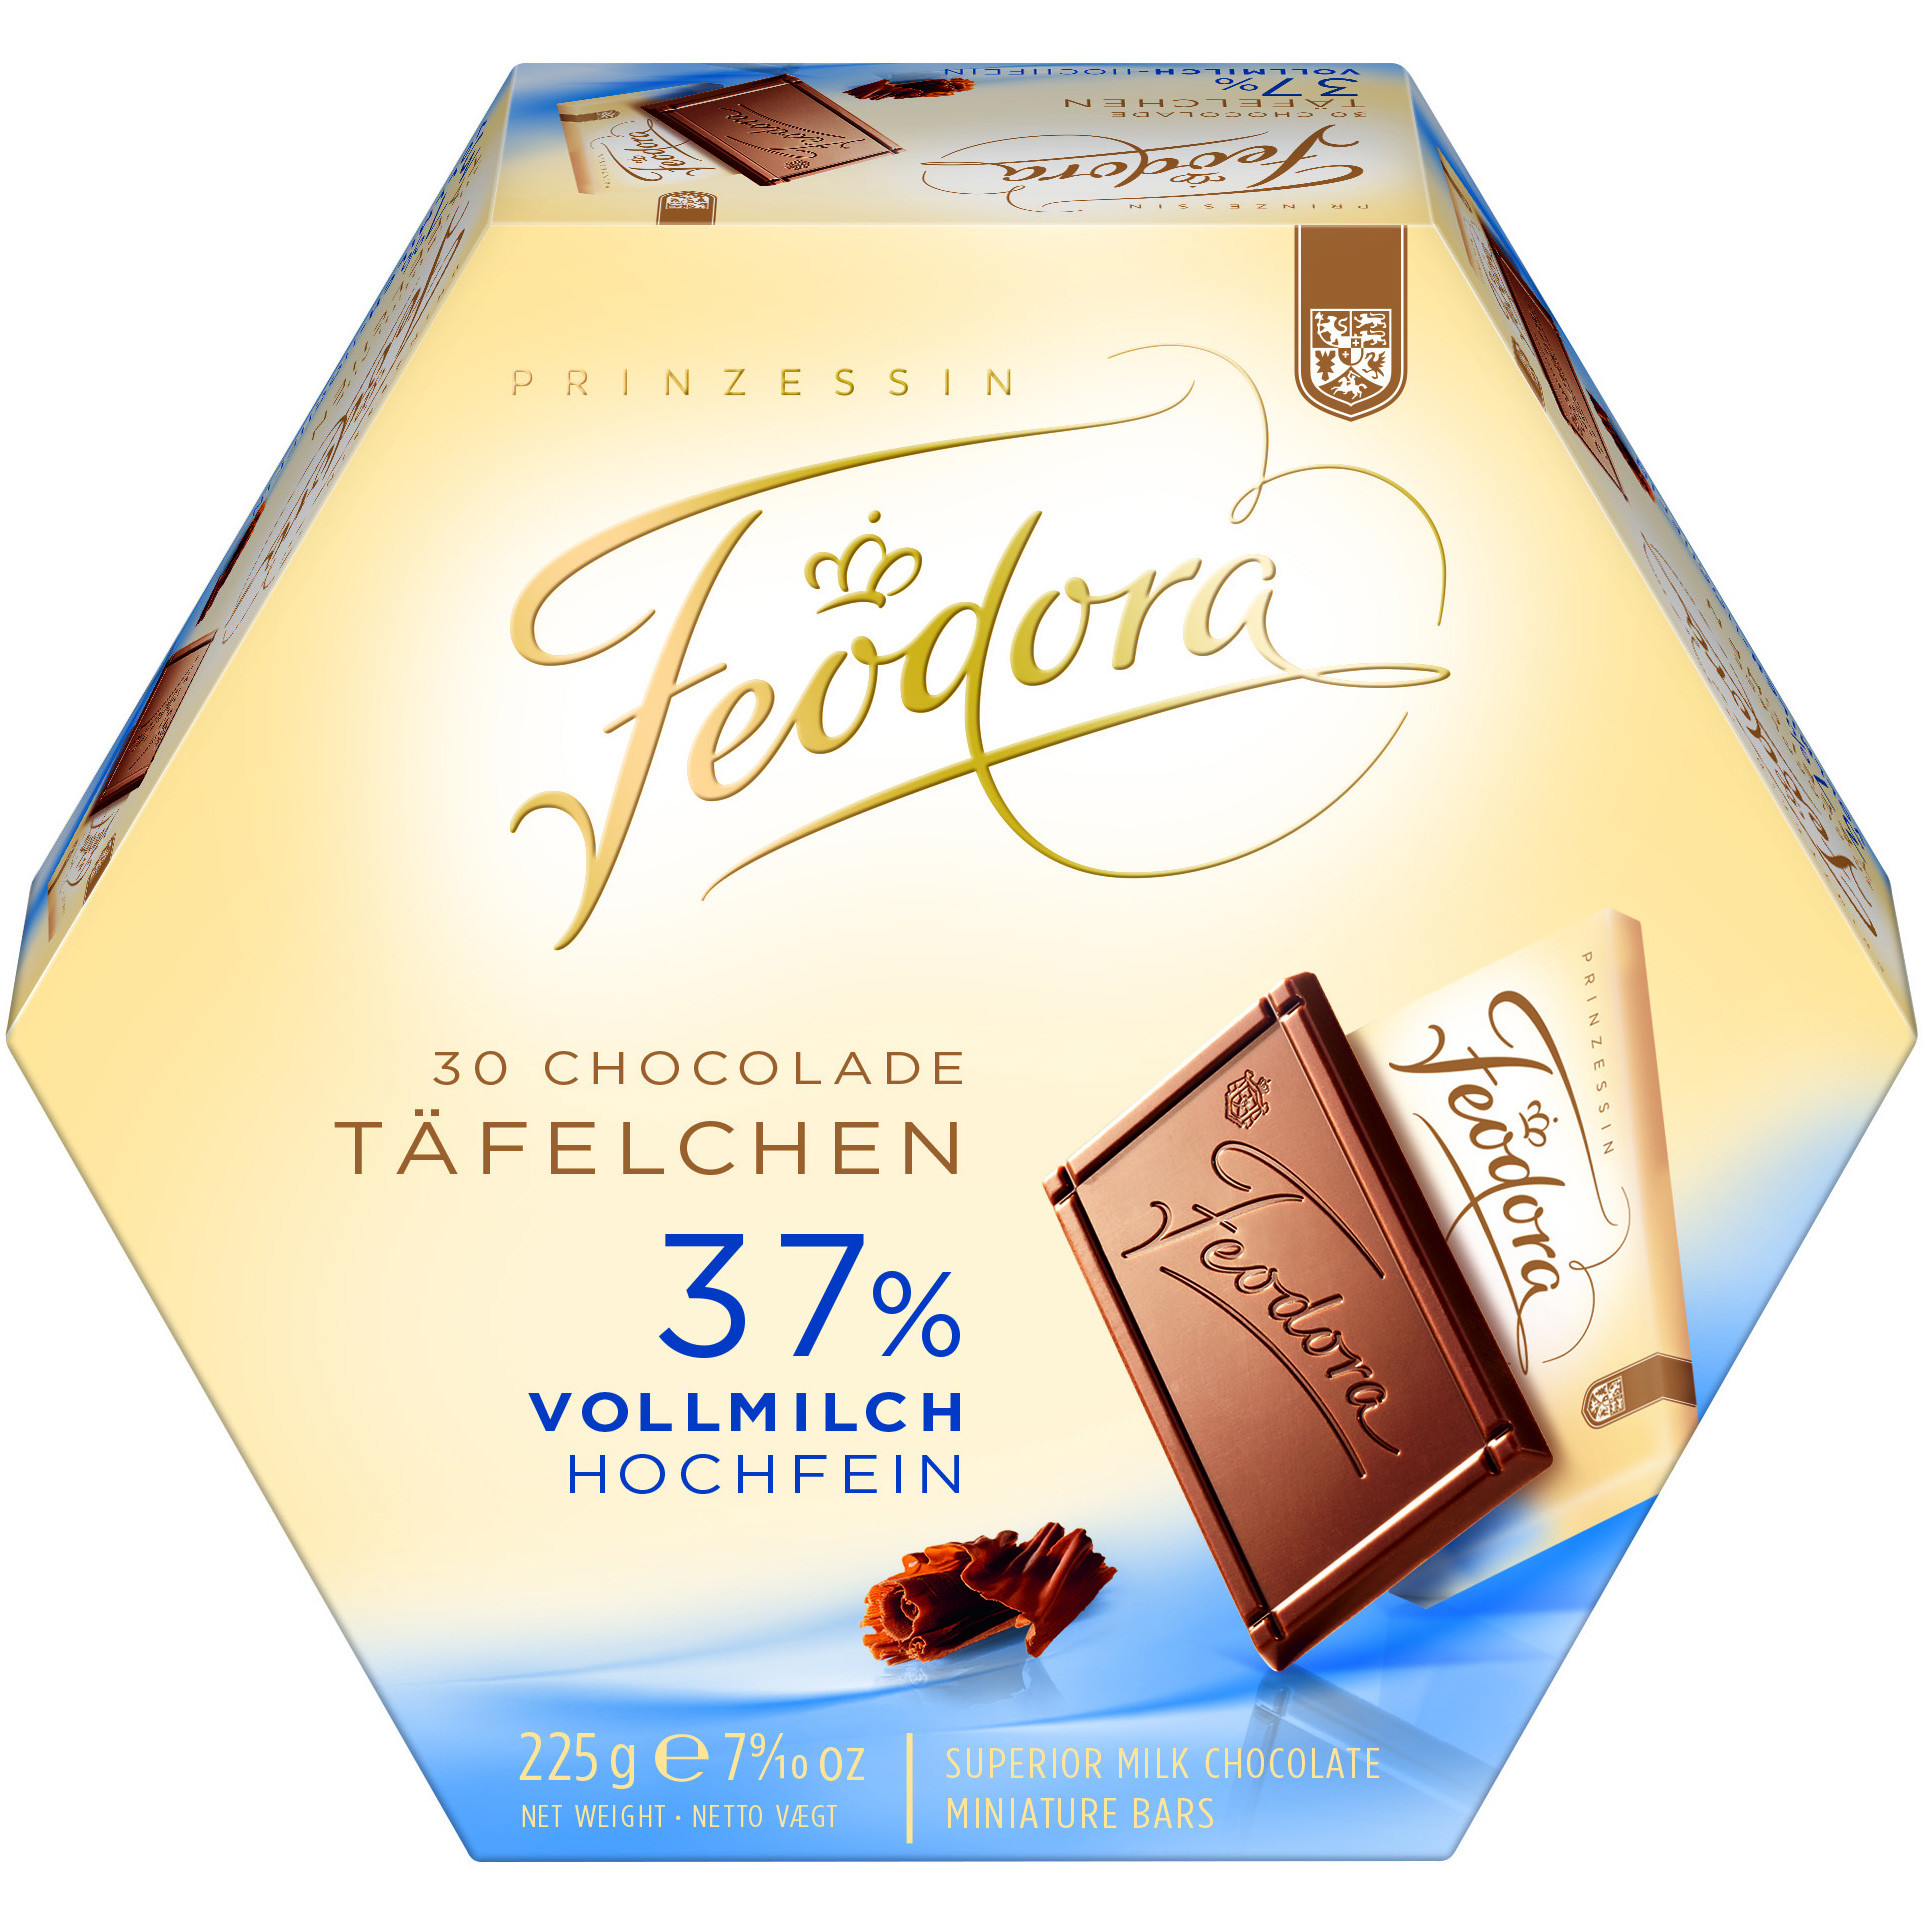 Feodora.De/Geschenke
 Feodora Chocolade Täfelchen Vollmilch Hochfein